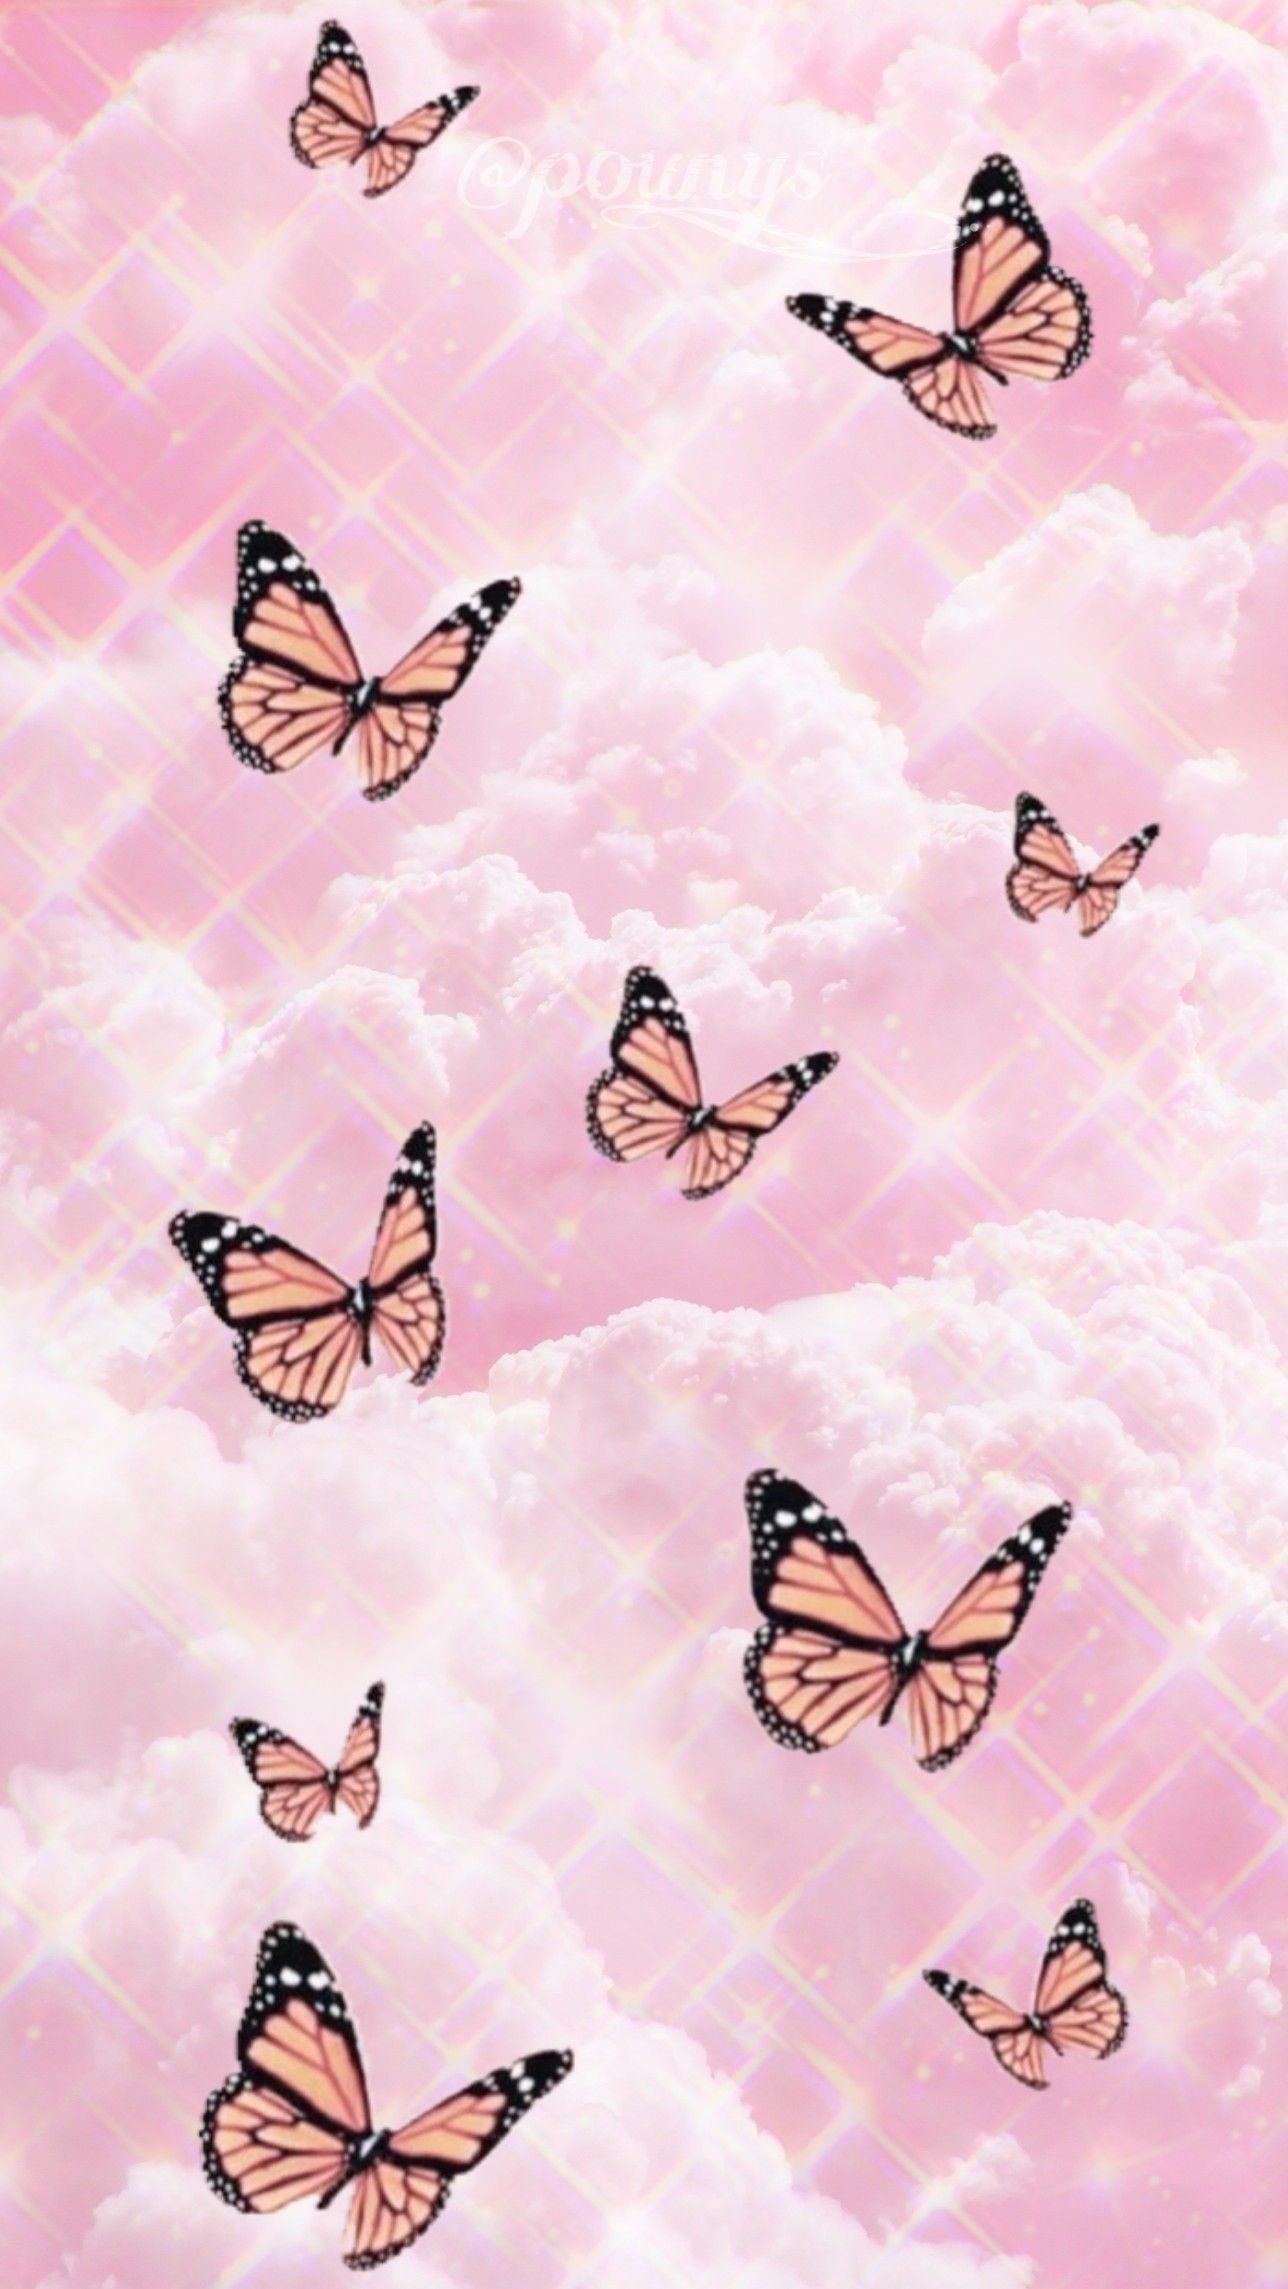 Free Aesthetic Butterfly Wallpaper  JPG  Templatenet